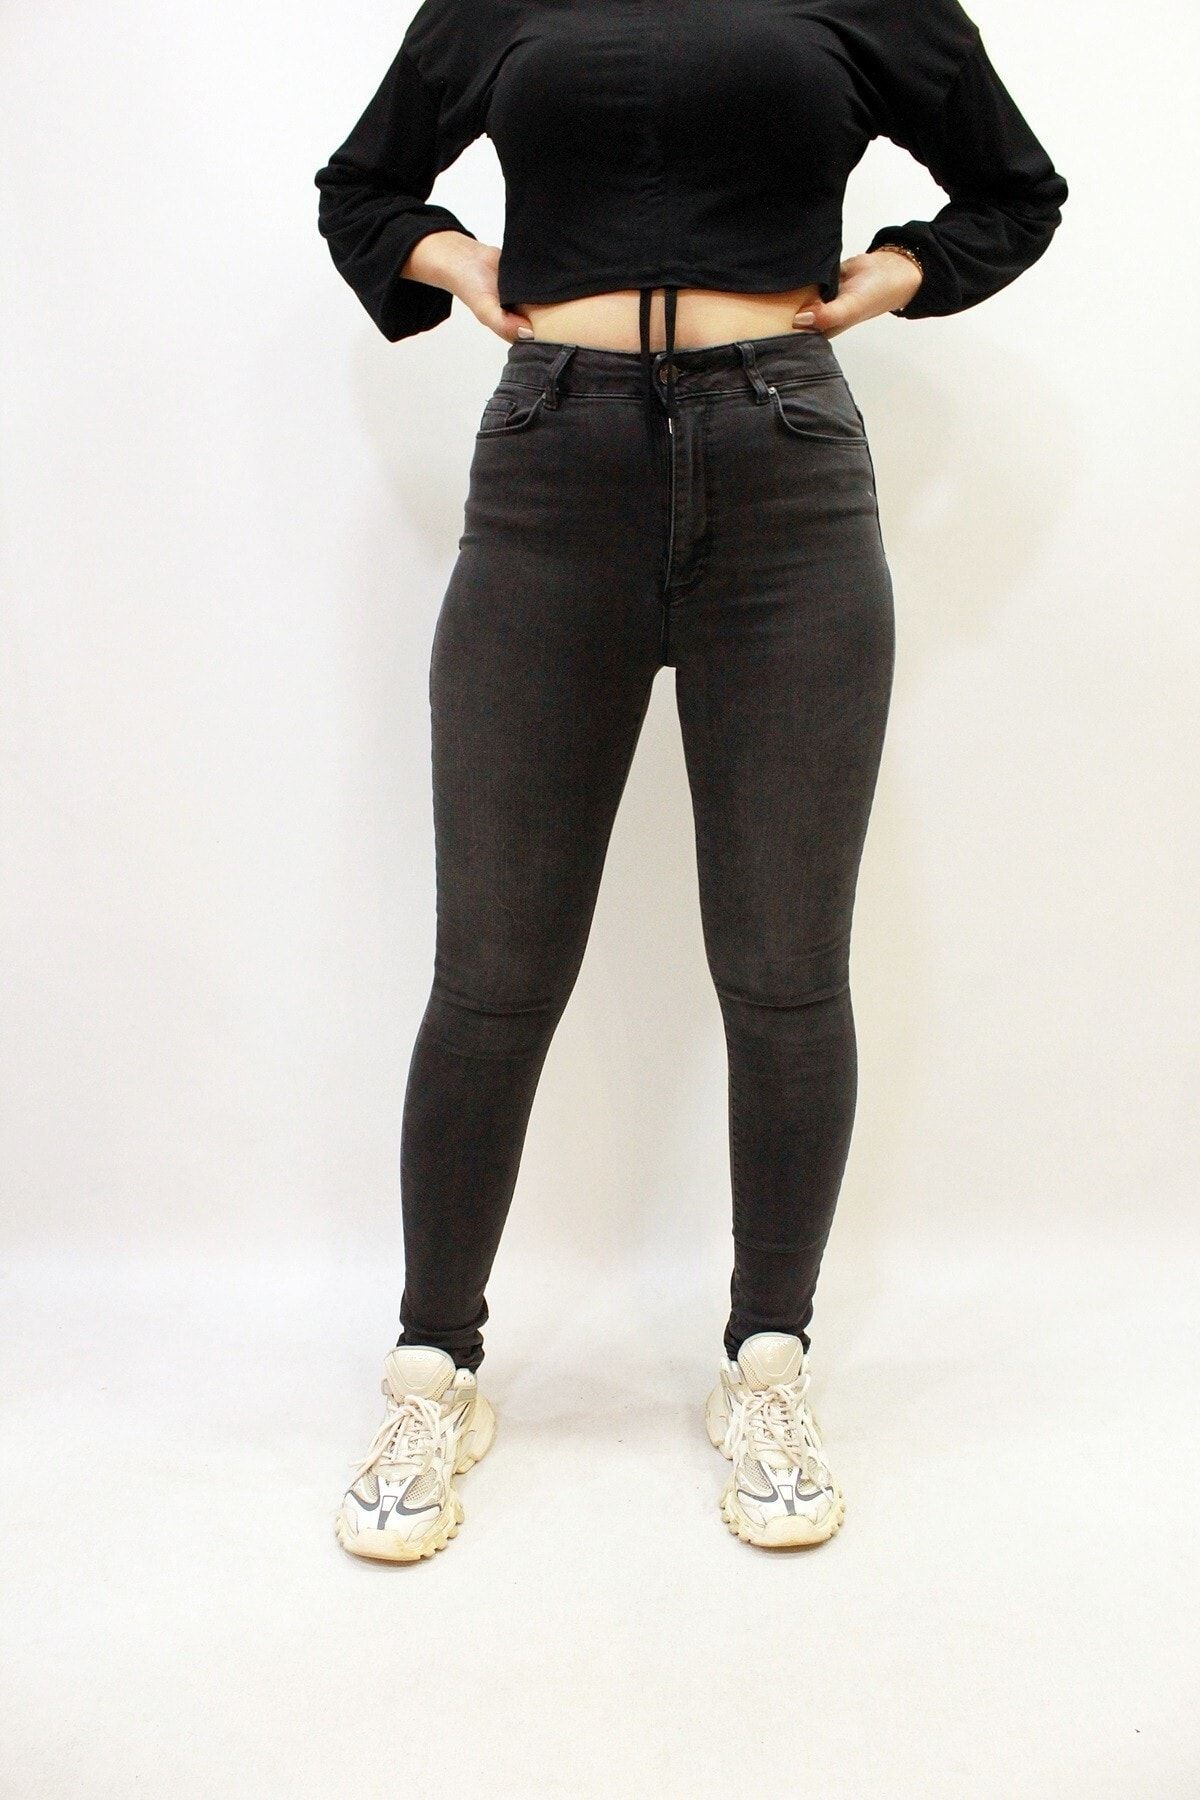 Twister Jeans Selın 9393-01 Likralı Dar Paça Kadın Yüksek Bel Kot Pantolon Füme